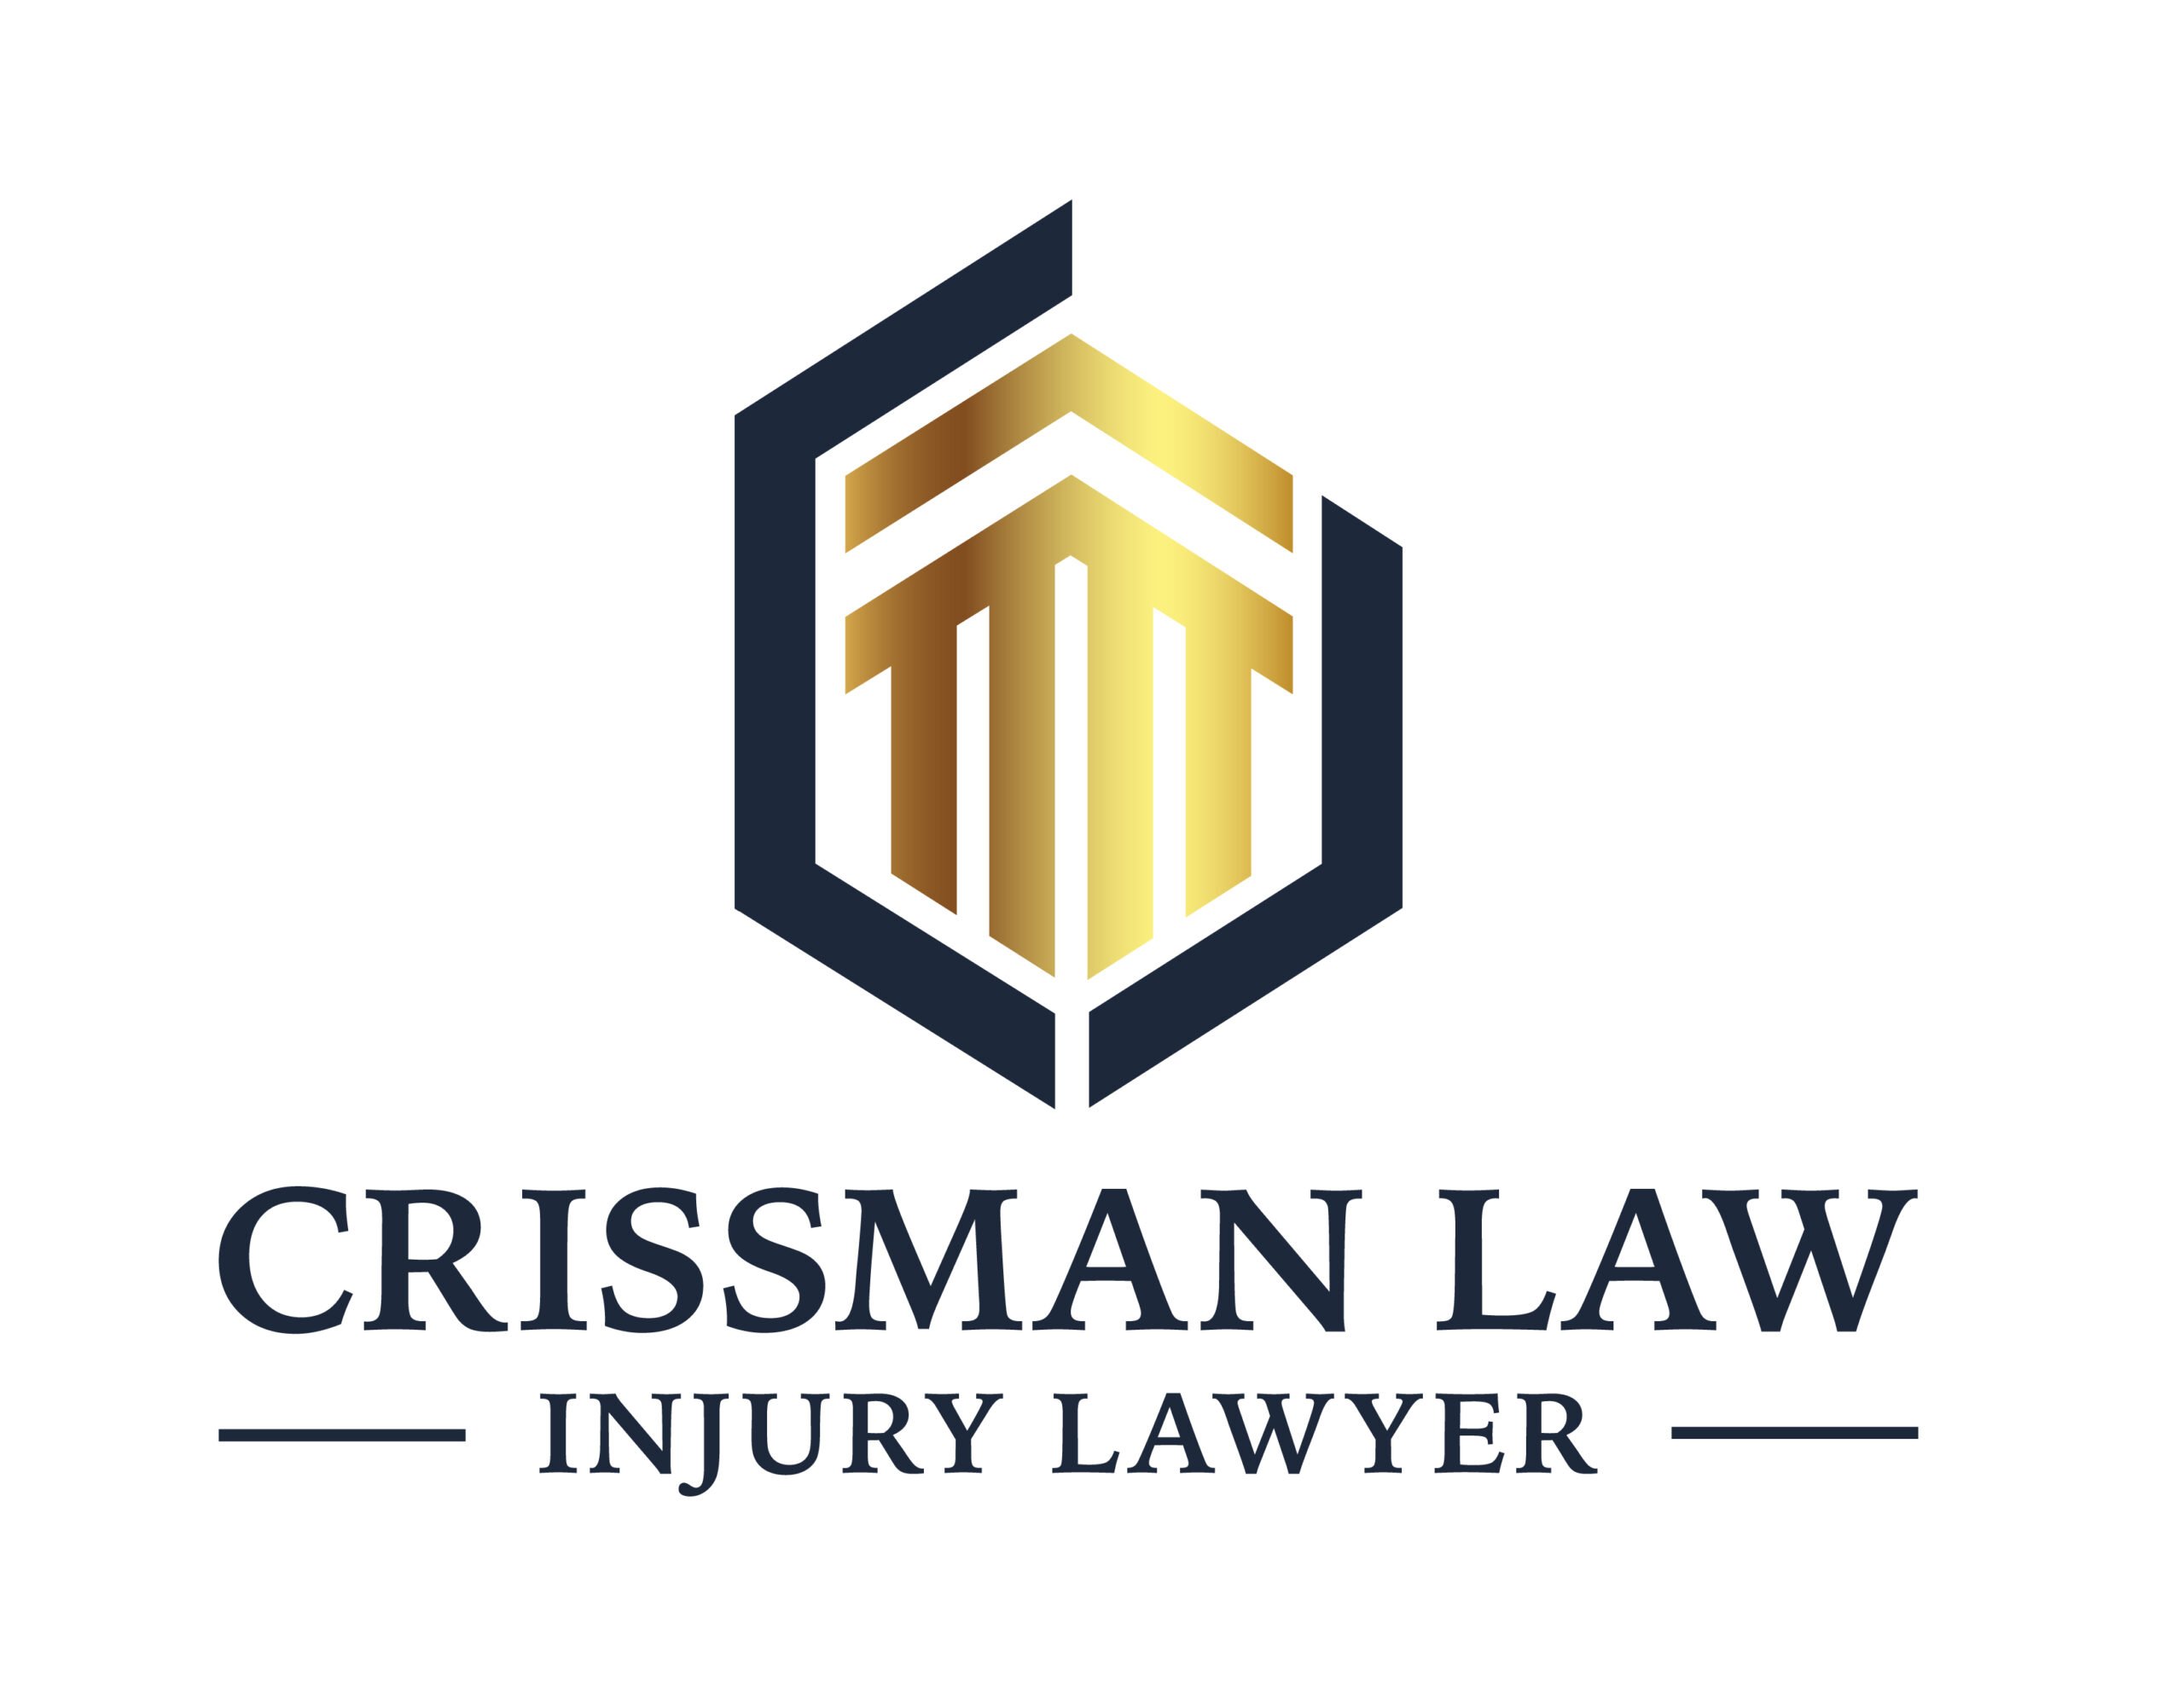 Crissman Law injury Lawyer